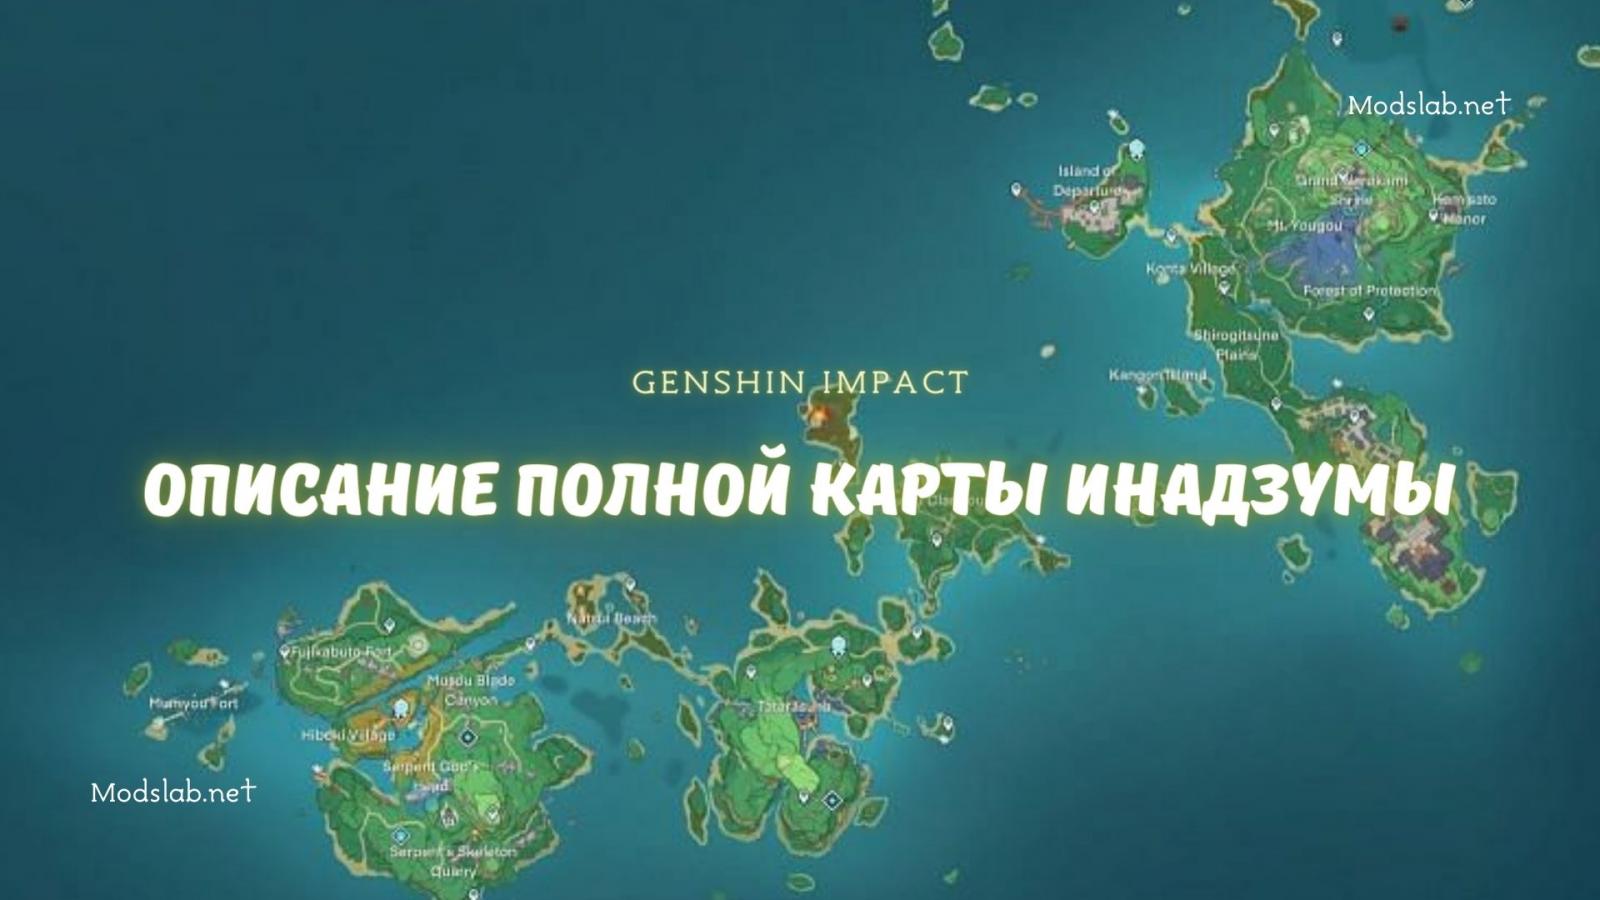 Карта генишна. Карта Инадзумы. Карта Инадзумы Геншин. Карта Геншин Импакт. Полная карта Геншин.